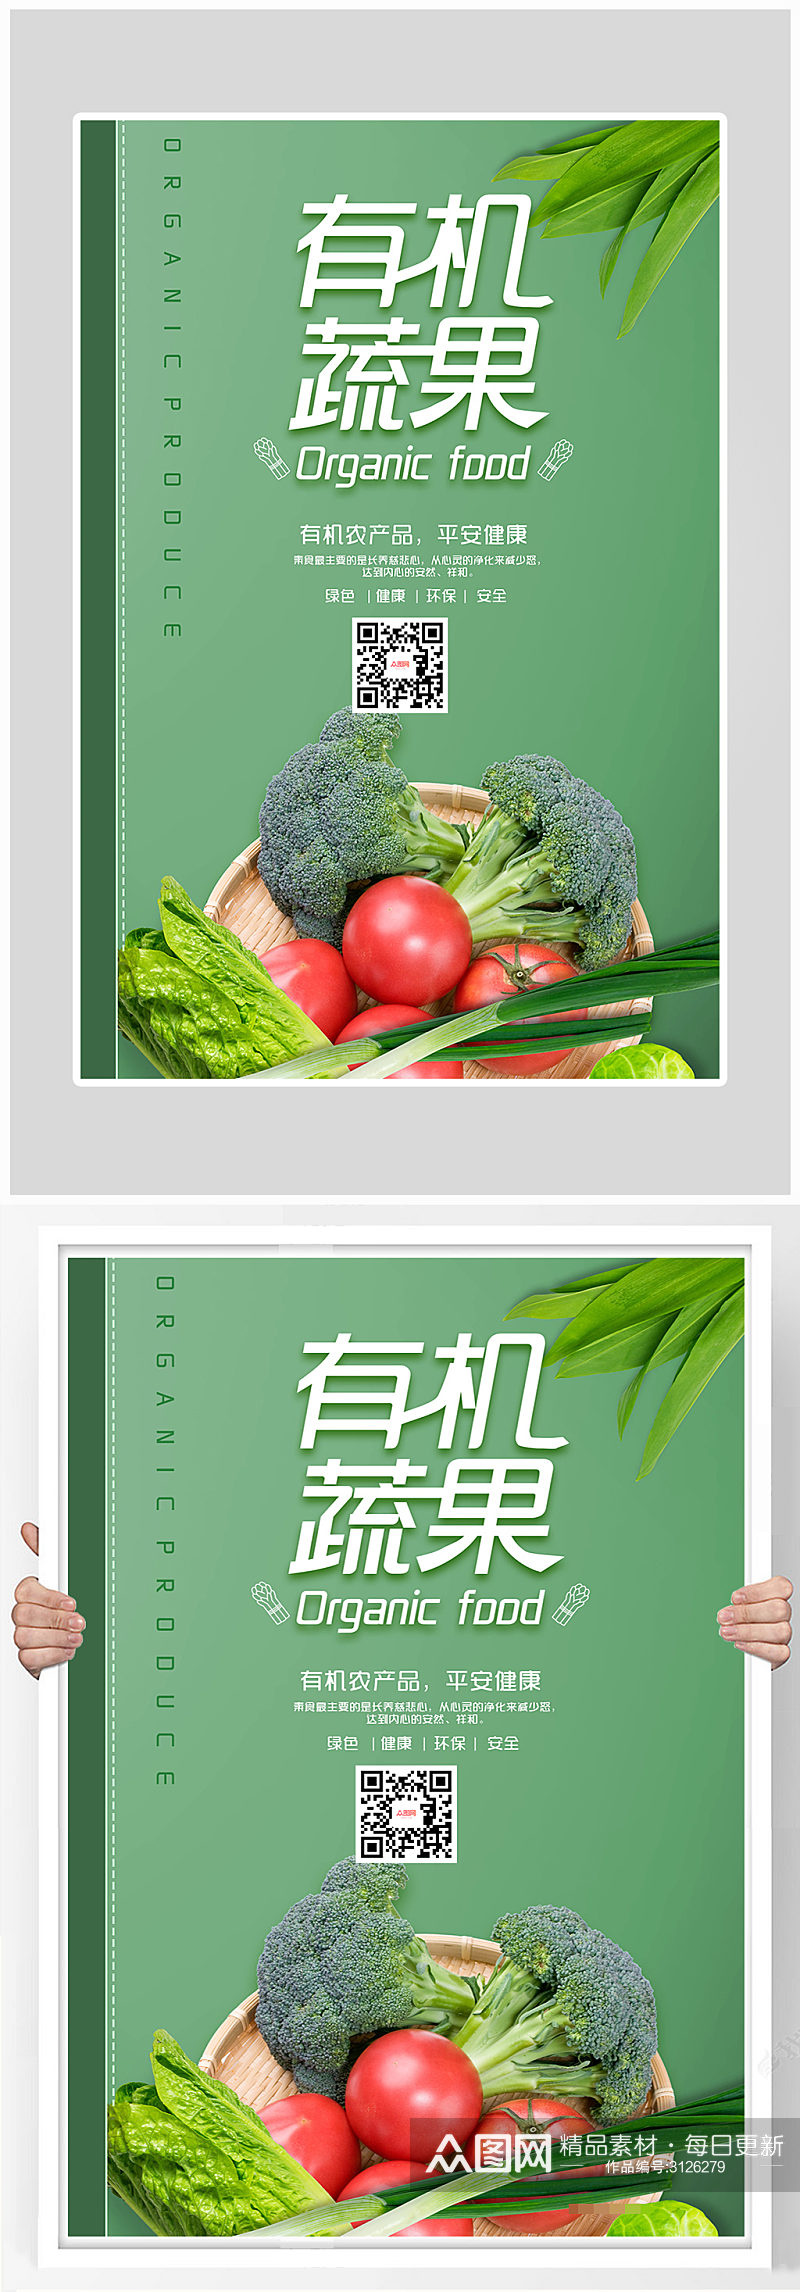 创意简约有机蔬菜健康食品海报设计素材